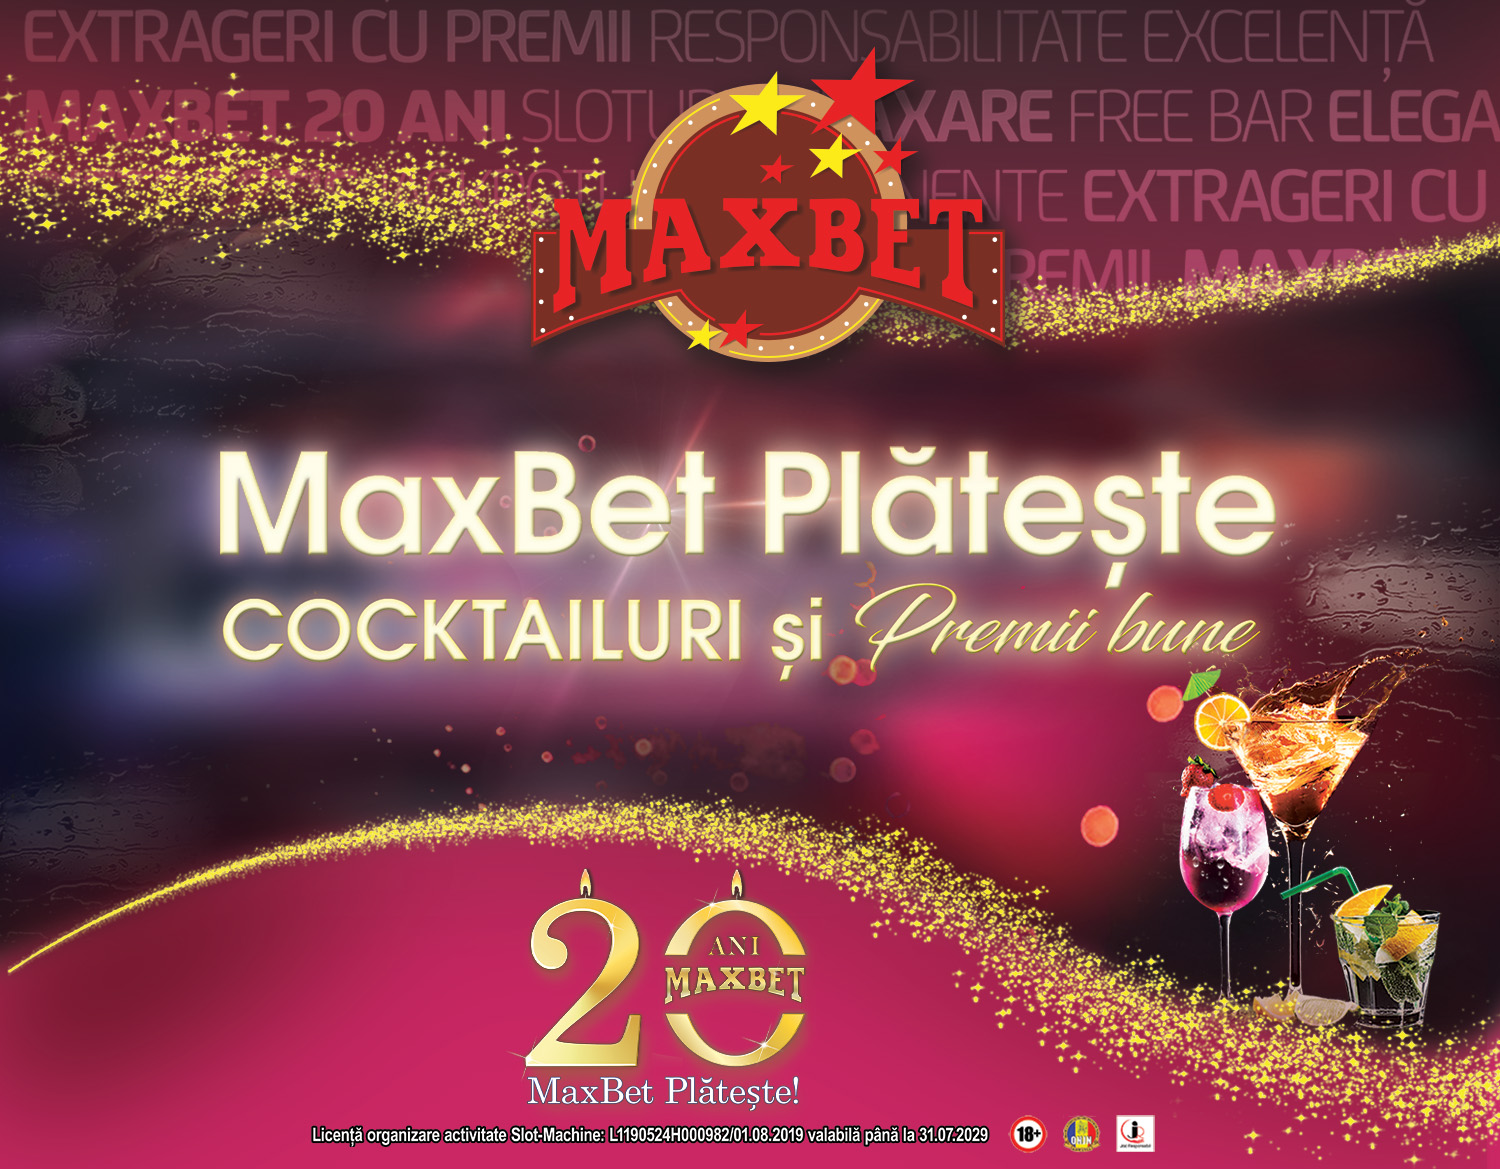 MaxBet plătește cocktailuri și premii bune!